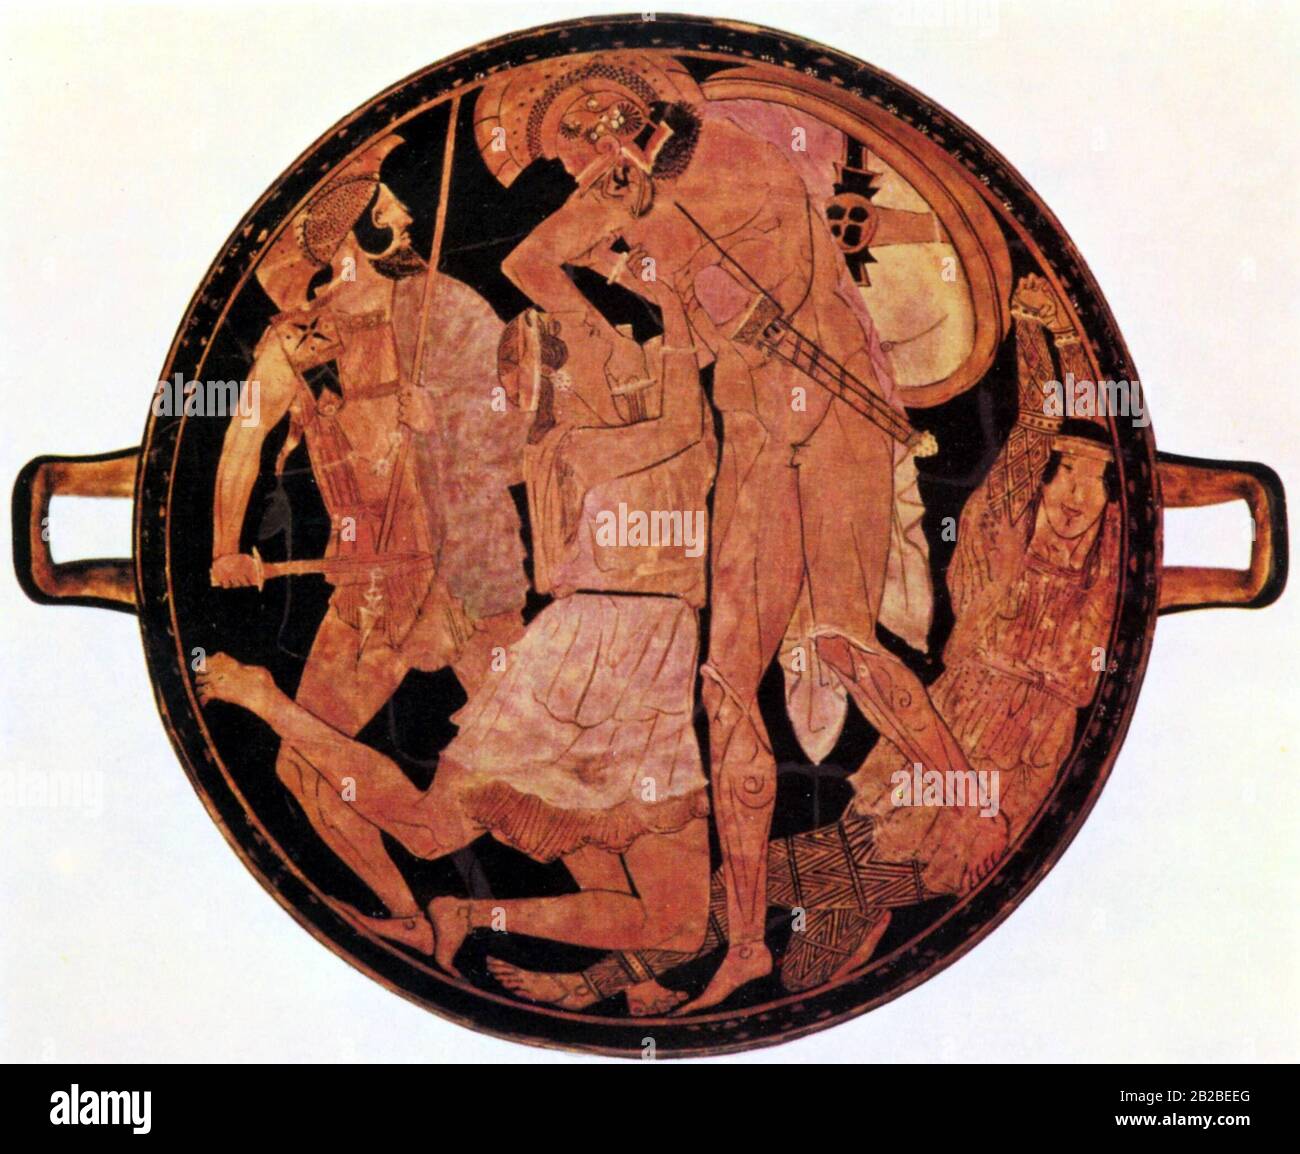 Achilles tue Penthesilea pendant la guerre de Troie, à l'intérieur d'une coupe Attique d'environ 460 av. J.-C. Banque D'Images